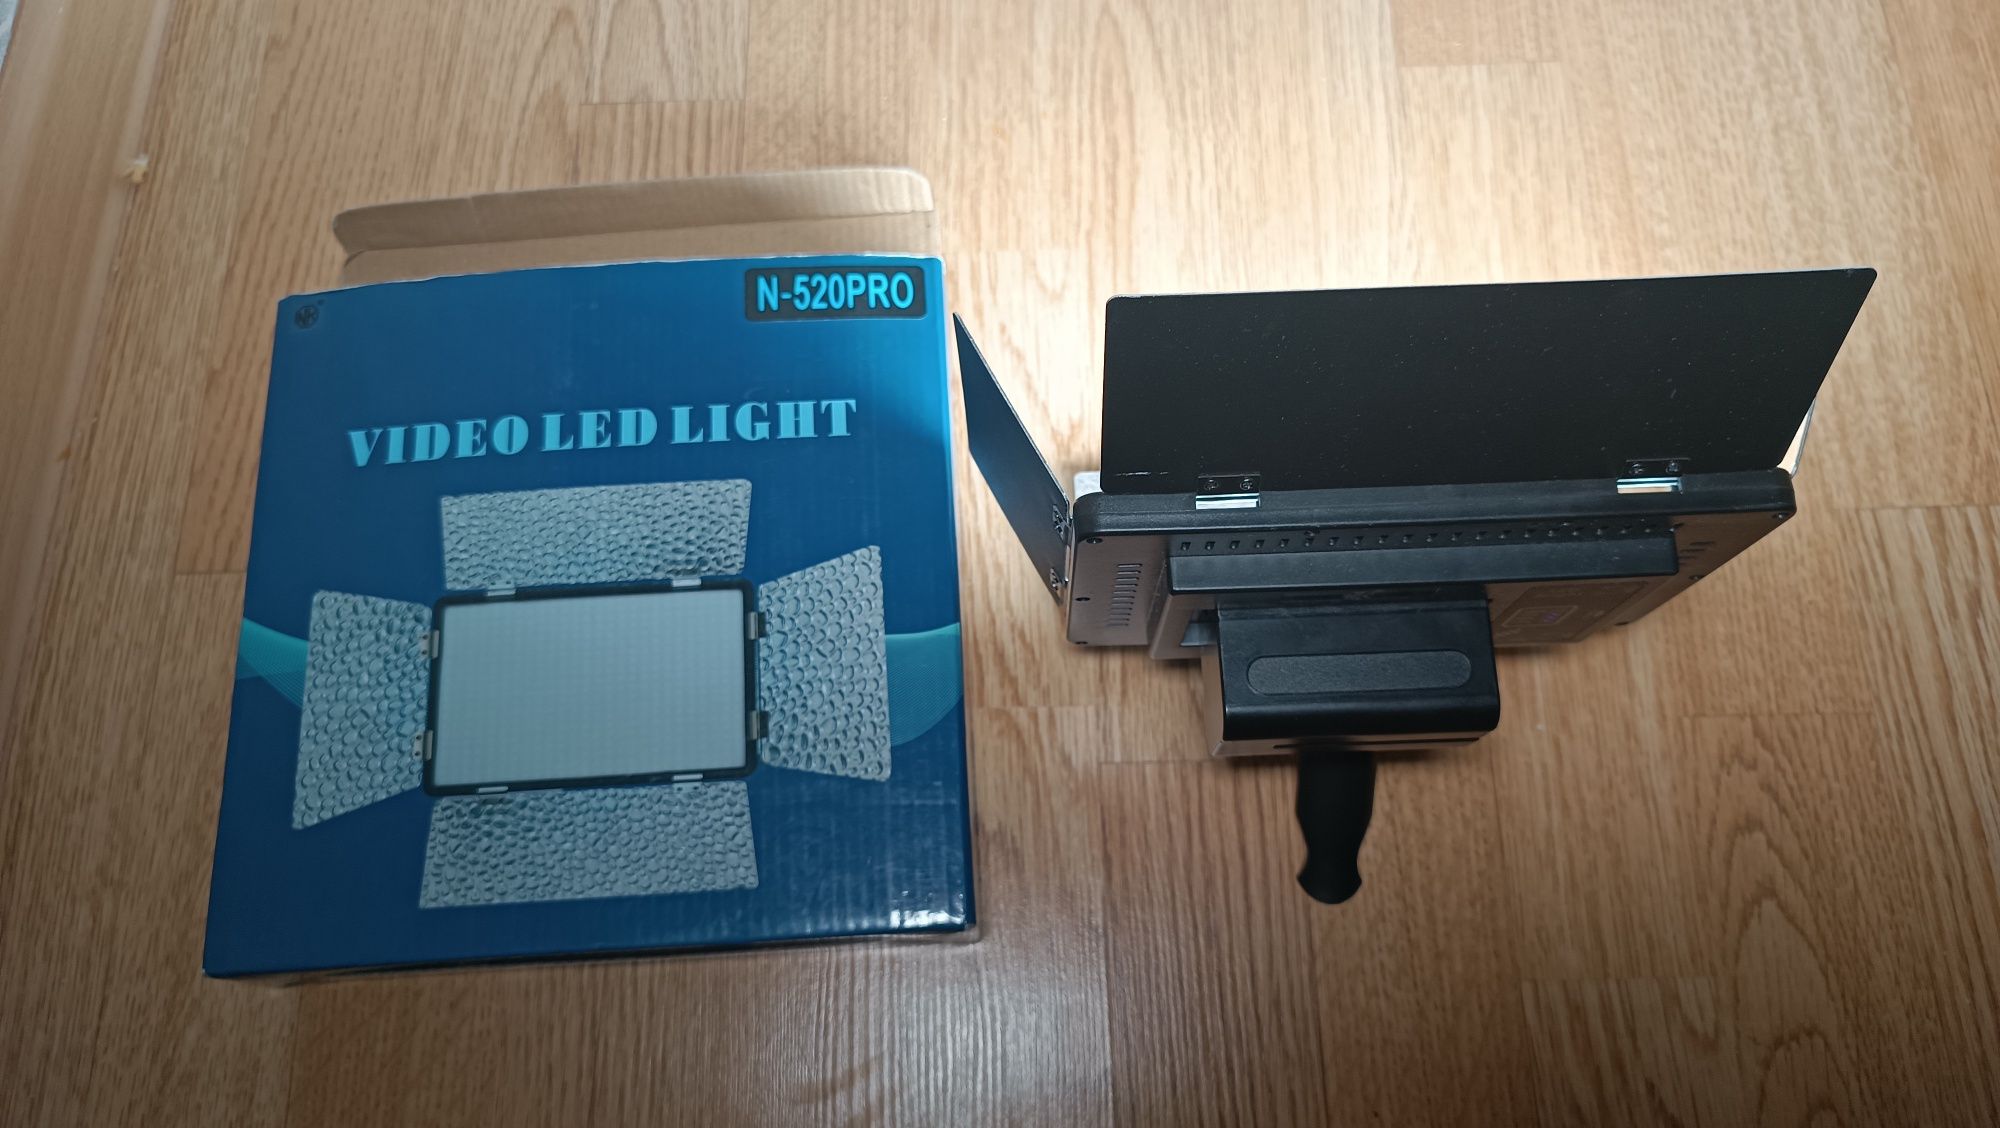 Led -свет,N-520 Pro
LED - осветите-5y ль, видеосвет Teyeleec N-520PRO